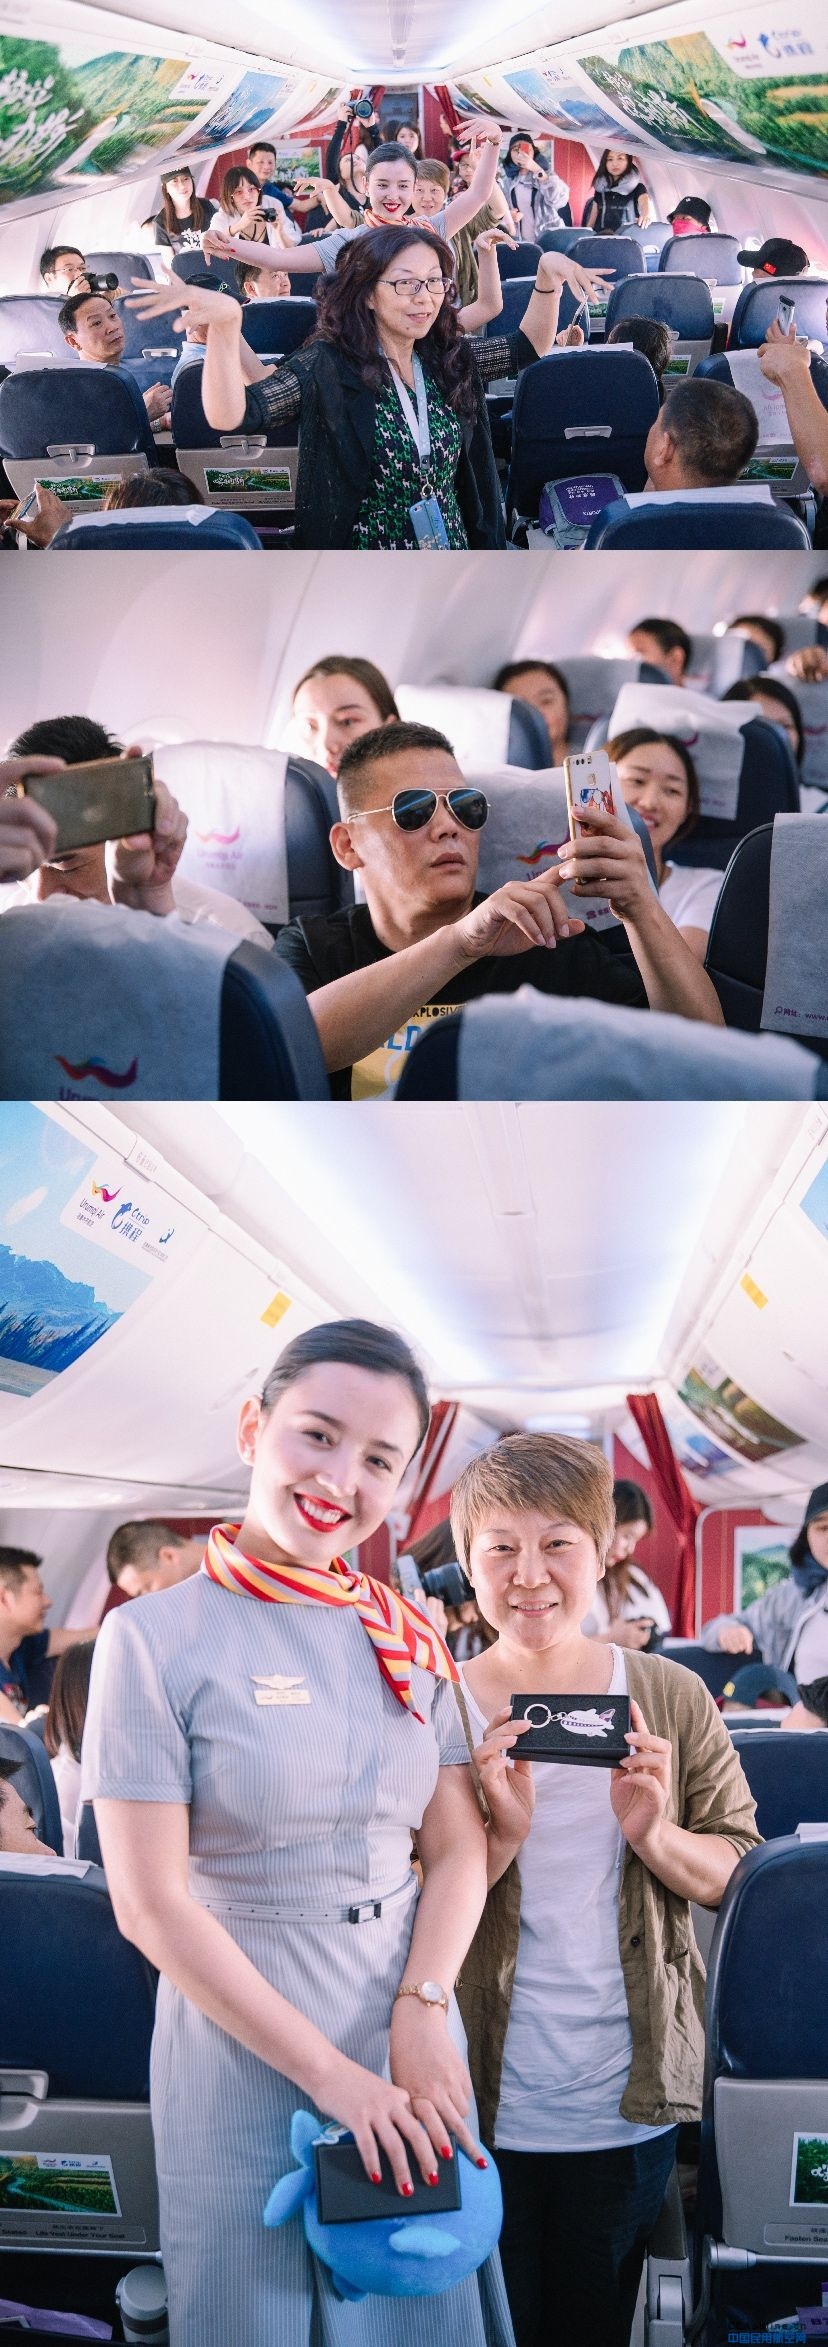 万米高空体验“喀纳斯”风情：乌鲁木齐航空联合携程打造“畅游喀纳斯”主题航班